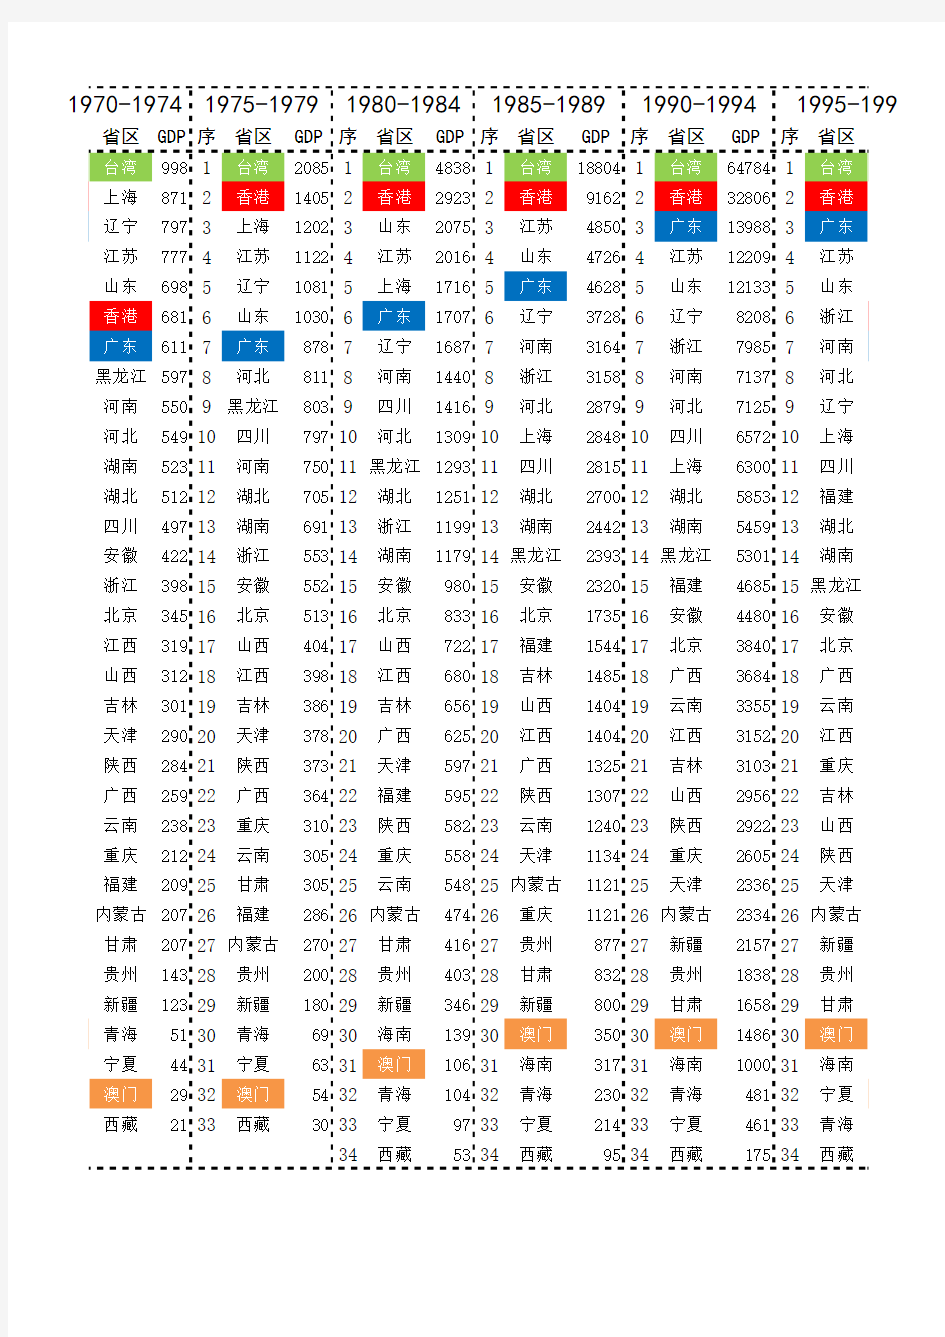 中国各省市1950-2014五年GDP总量排名